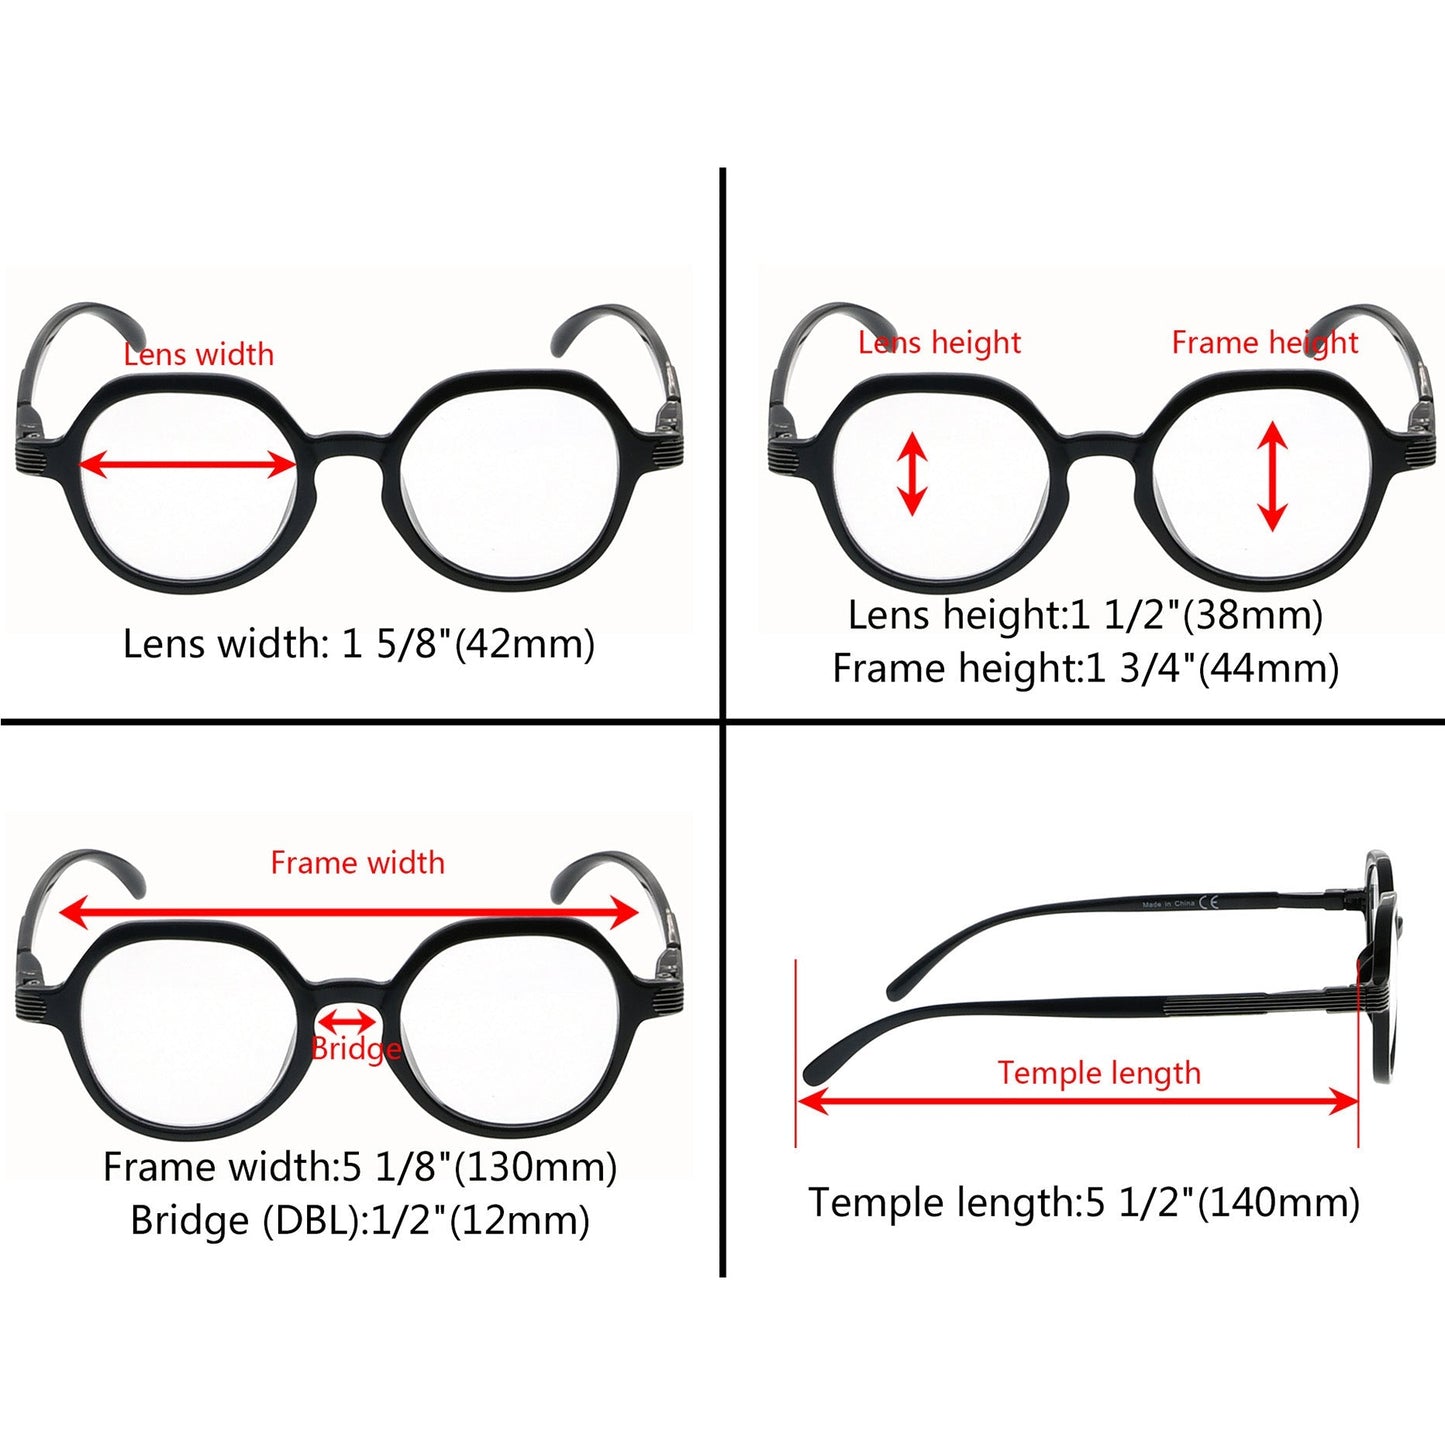 4 Pack Retro Design Reading Glasses for Women Men R2008